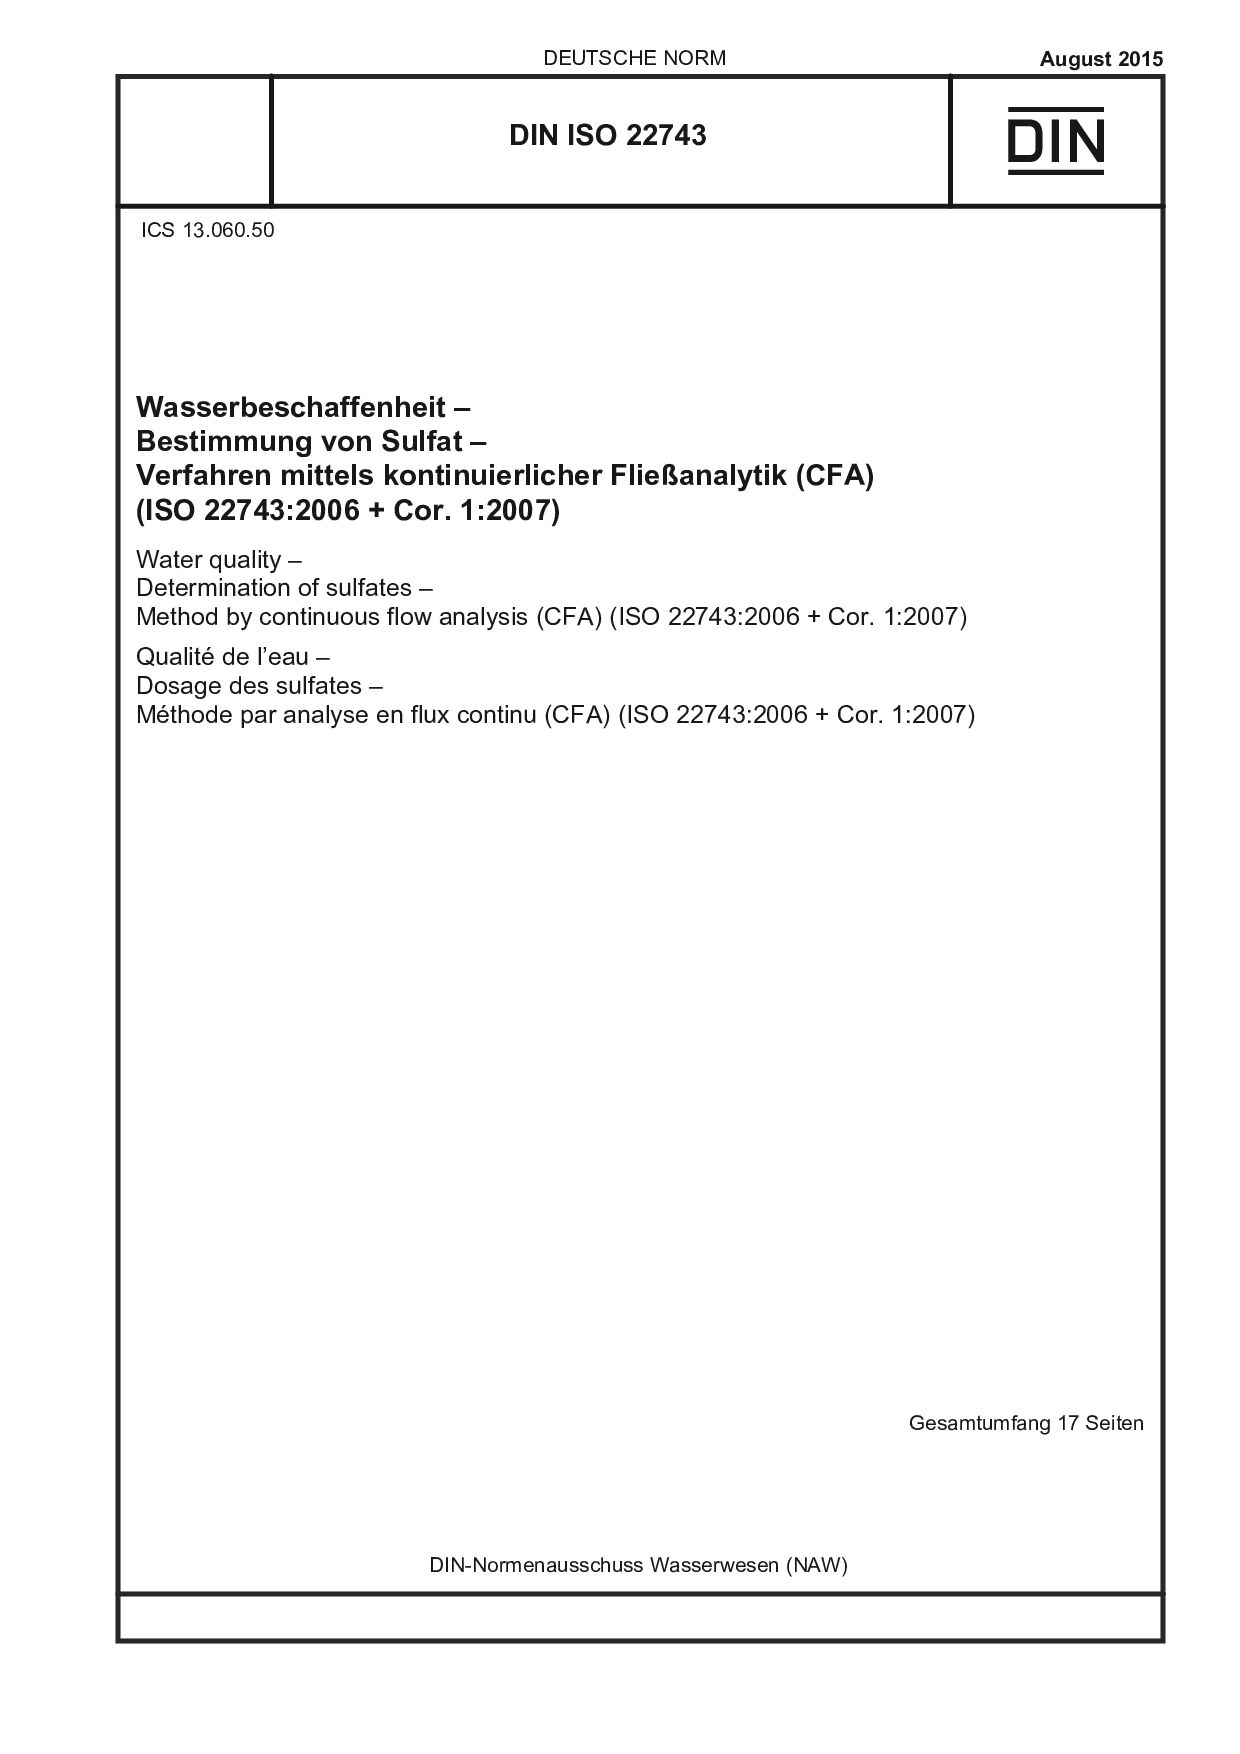 DIN ISO 22743:2015封面图